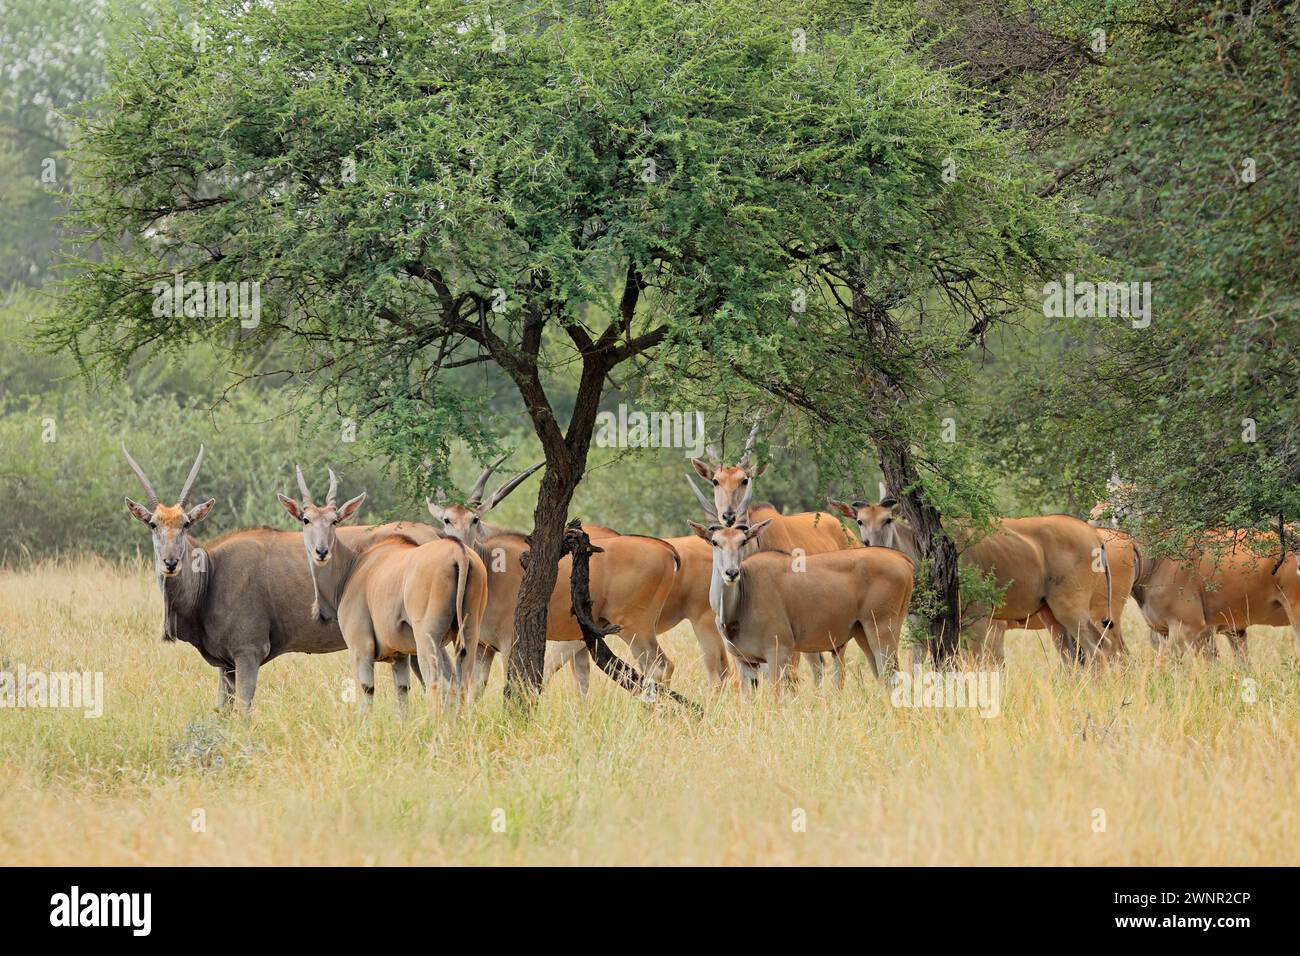 Troupeau d'antilopes (Tragelaphus oryx) dans le paysage de savane, Afrique du Sud Banque D'Images